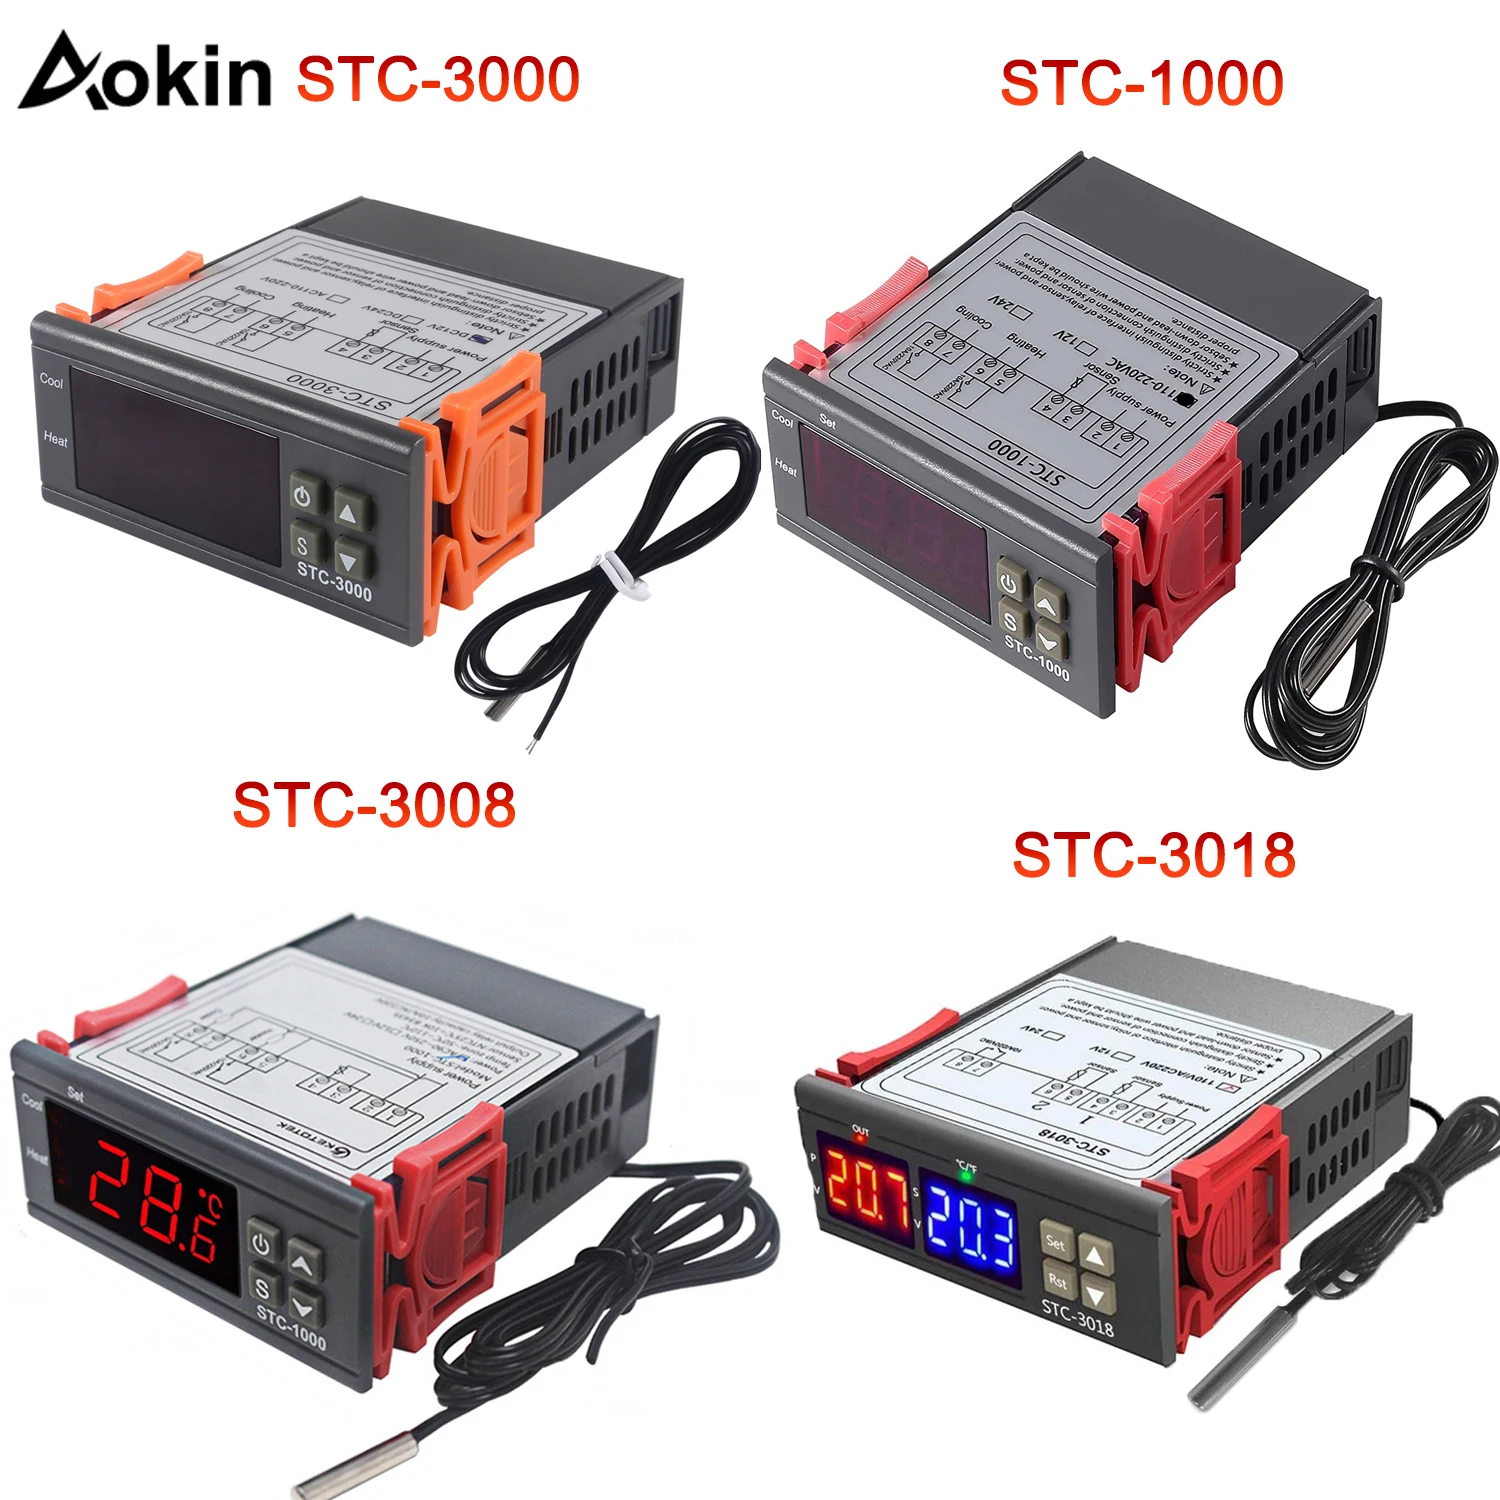 

STC-1000 3000 3008 3018 Dual LED Digital Thermostat Temperature Controller DC 12V 24V AC 110V 220V Heating Cooling Regulator